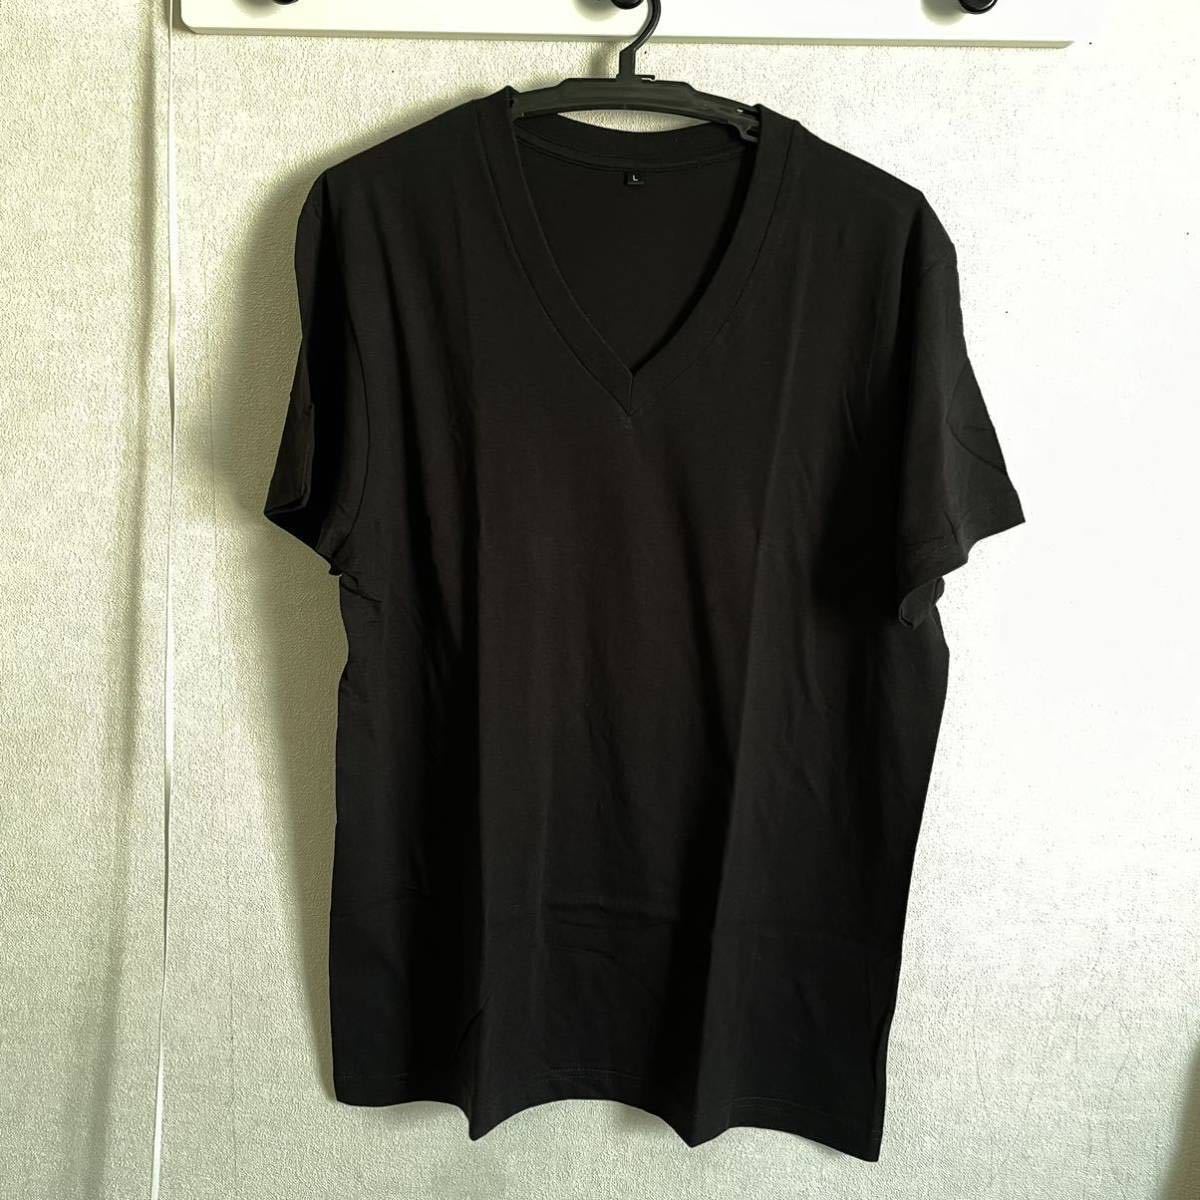 10枚組 L VネックTシャツ 綿100% 黒 ブラック V首 半袖 Tシャツ アンダーシャツ 男性 紳士 下着 メンズ インナー シャツ 半袖シャツ 定番♪の画像2